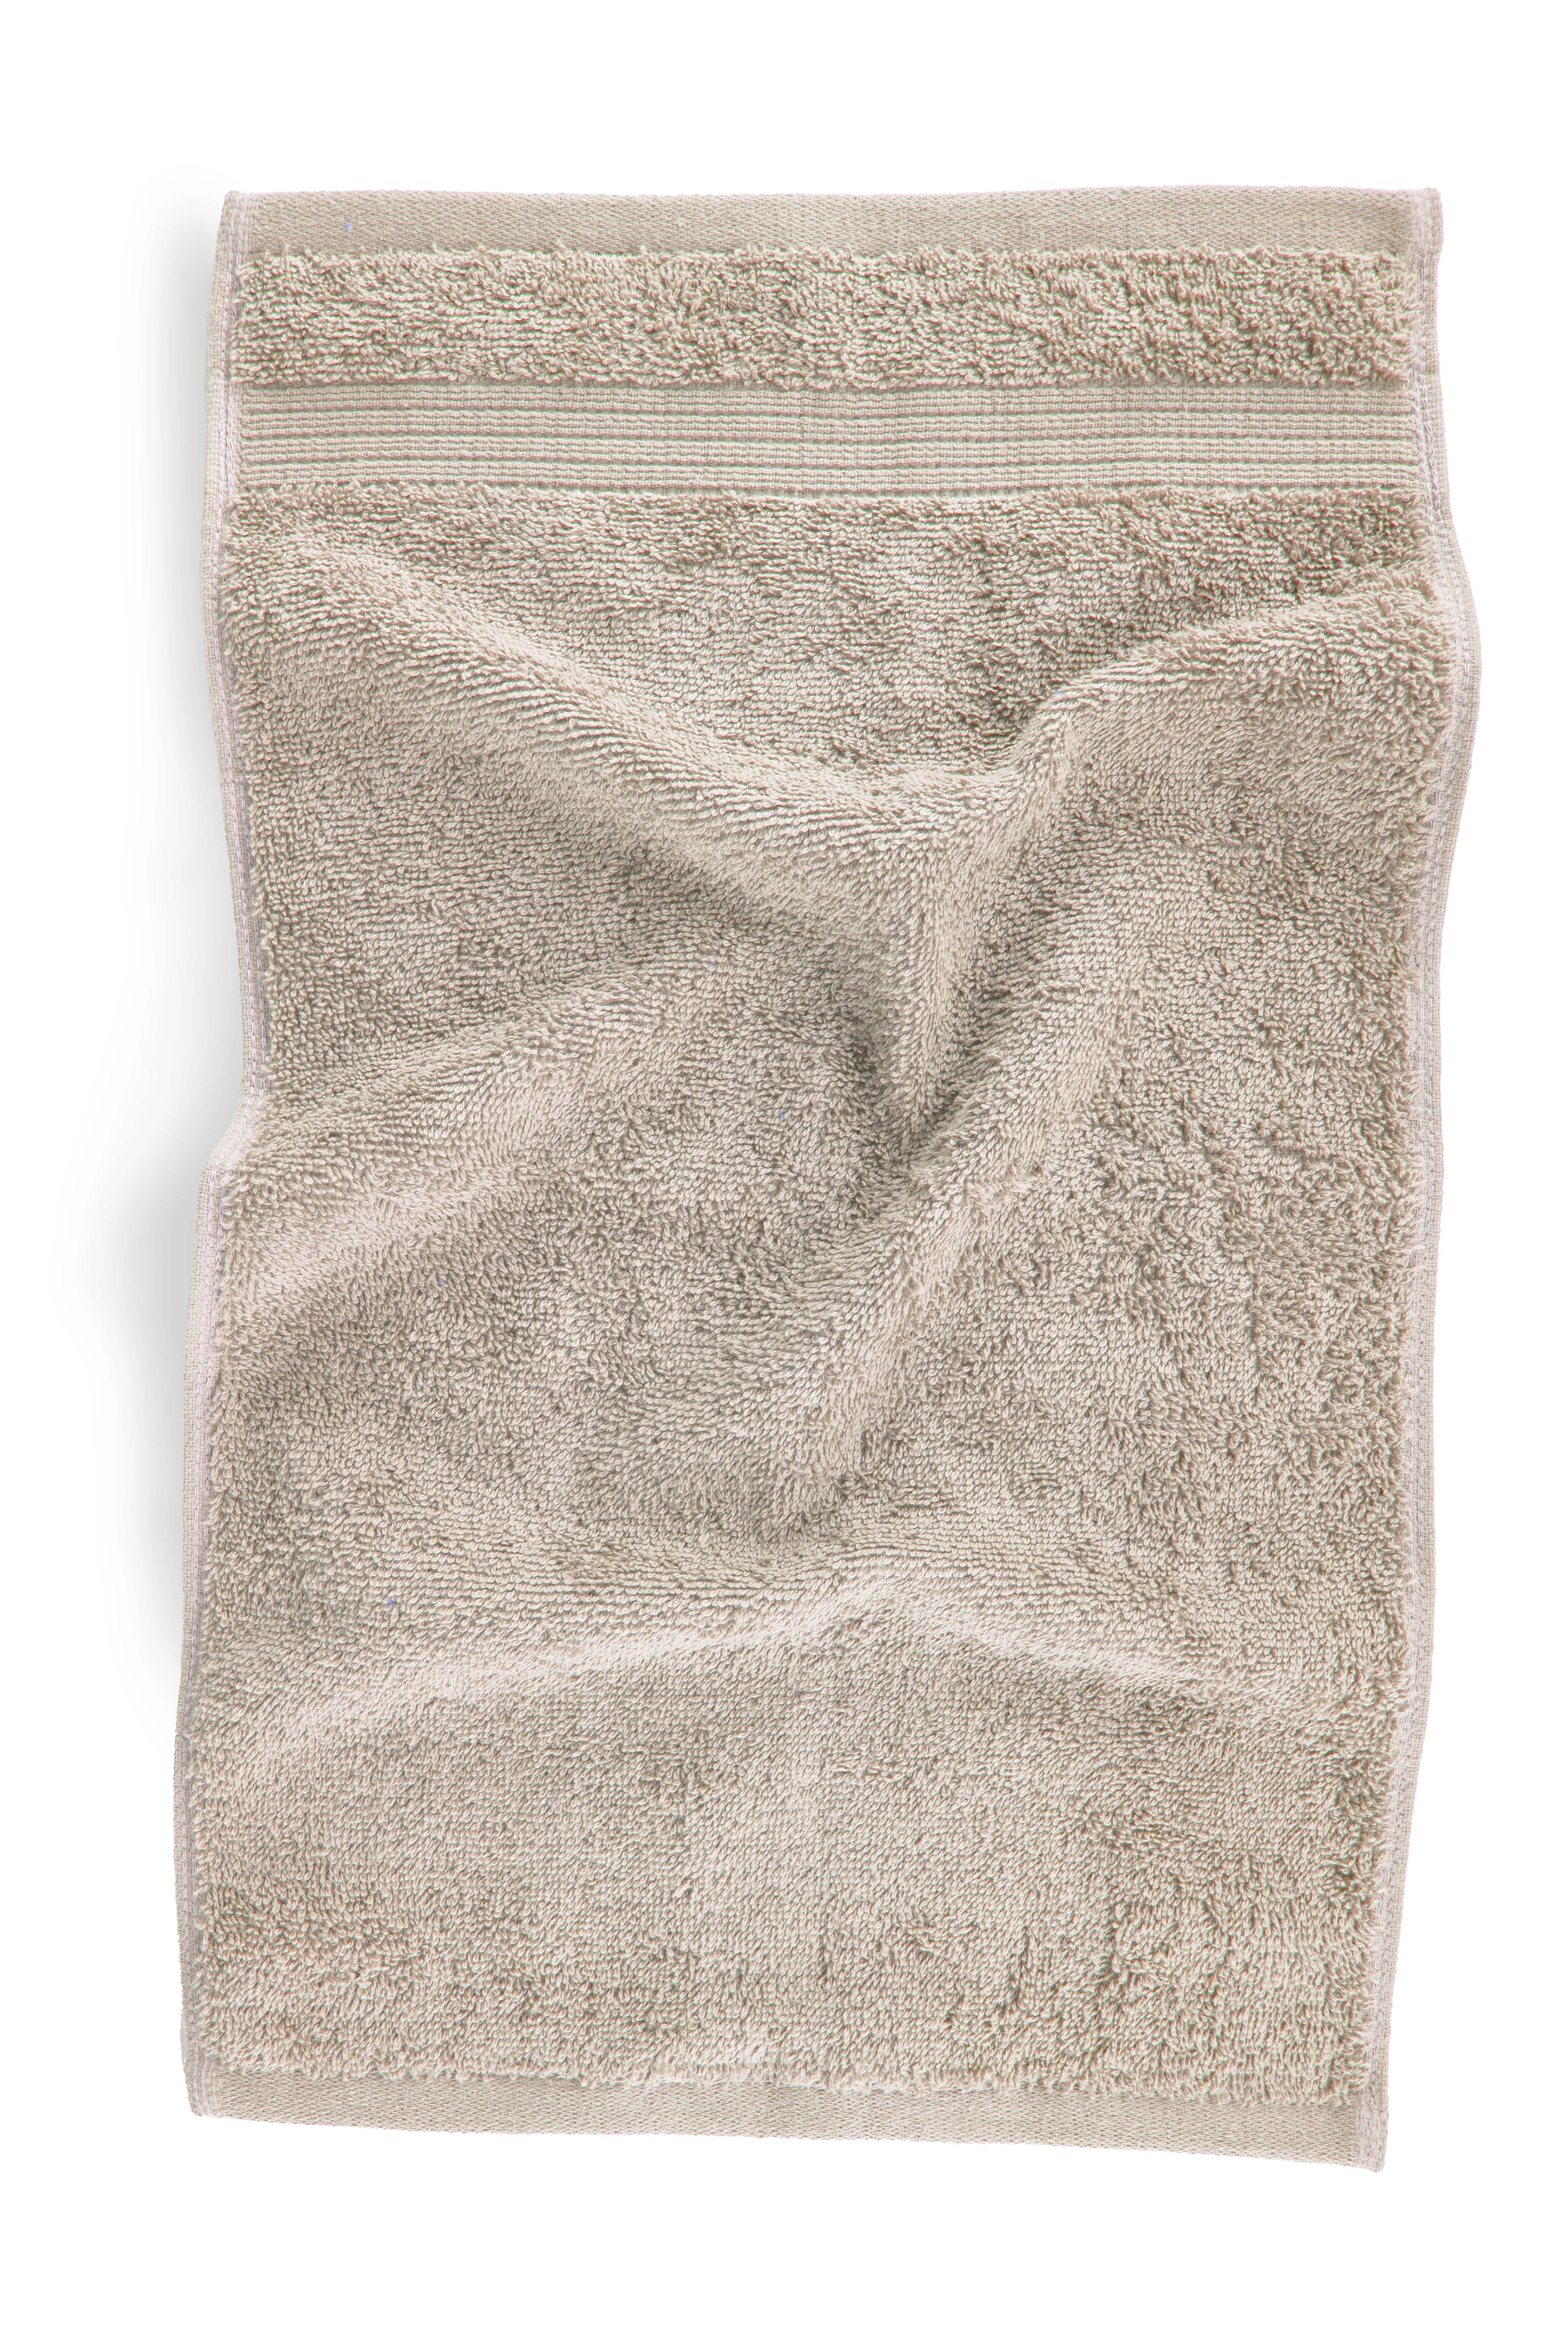 Guest towel EDEN 30x50cm, sand  set/2